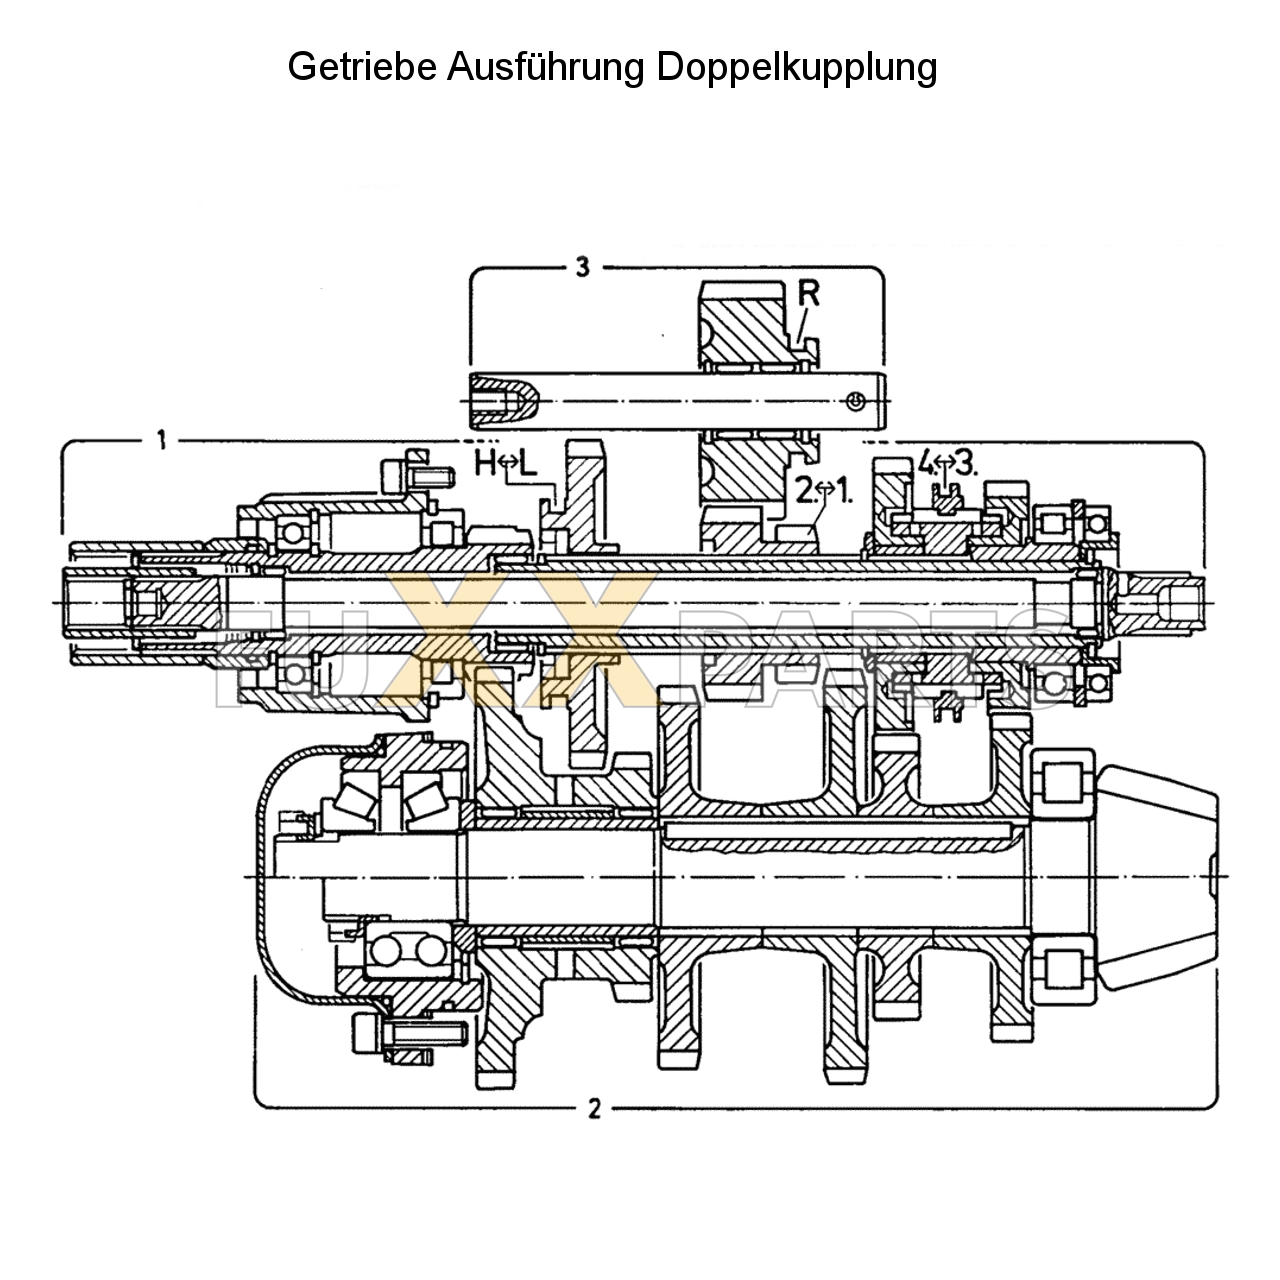 D 4007 Getriebeschnittbild Doppelkupplung